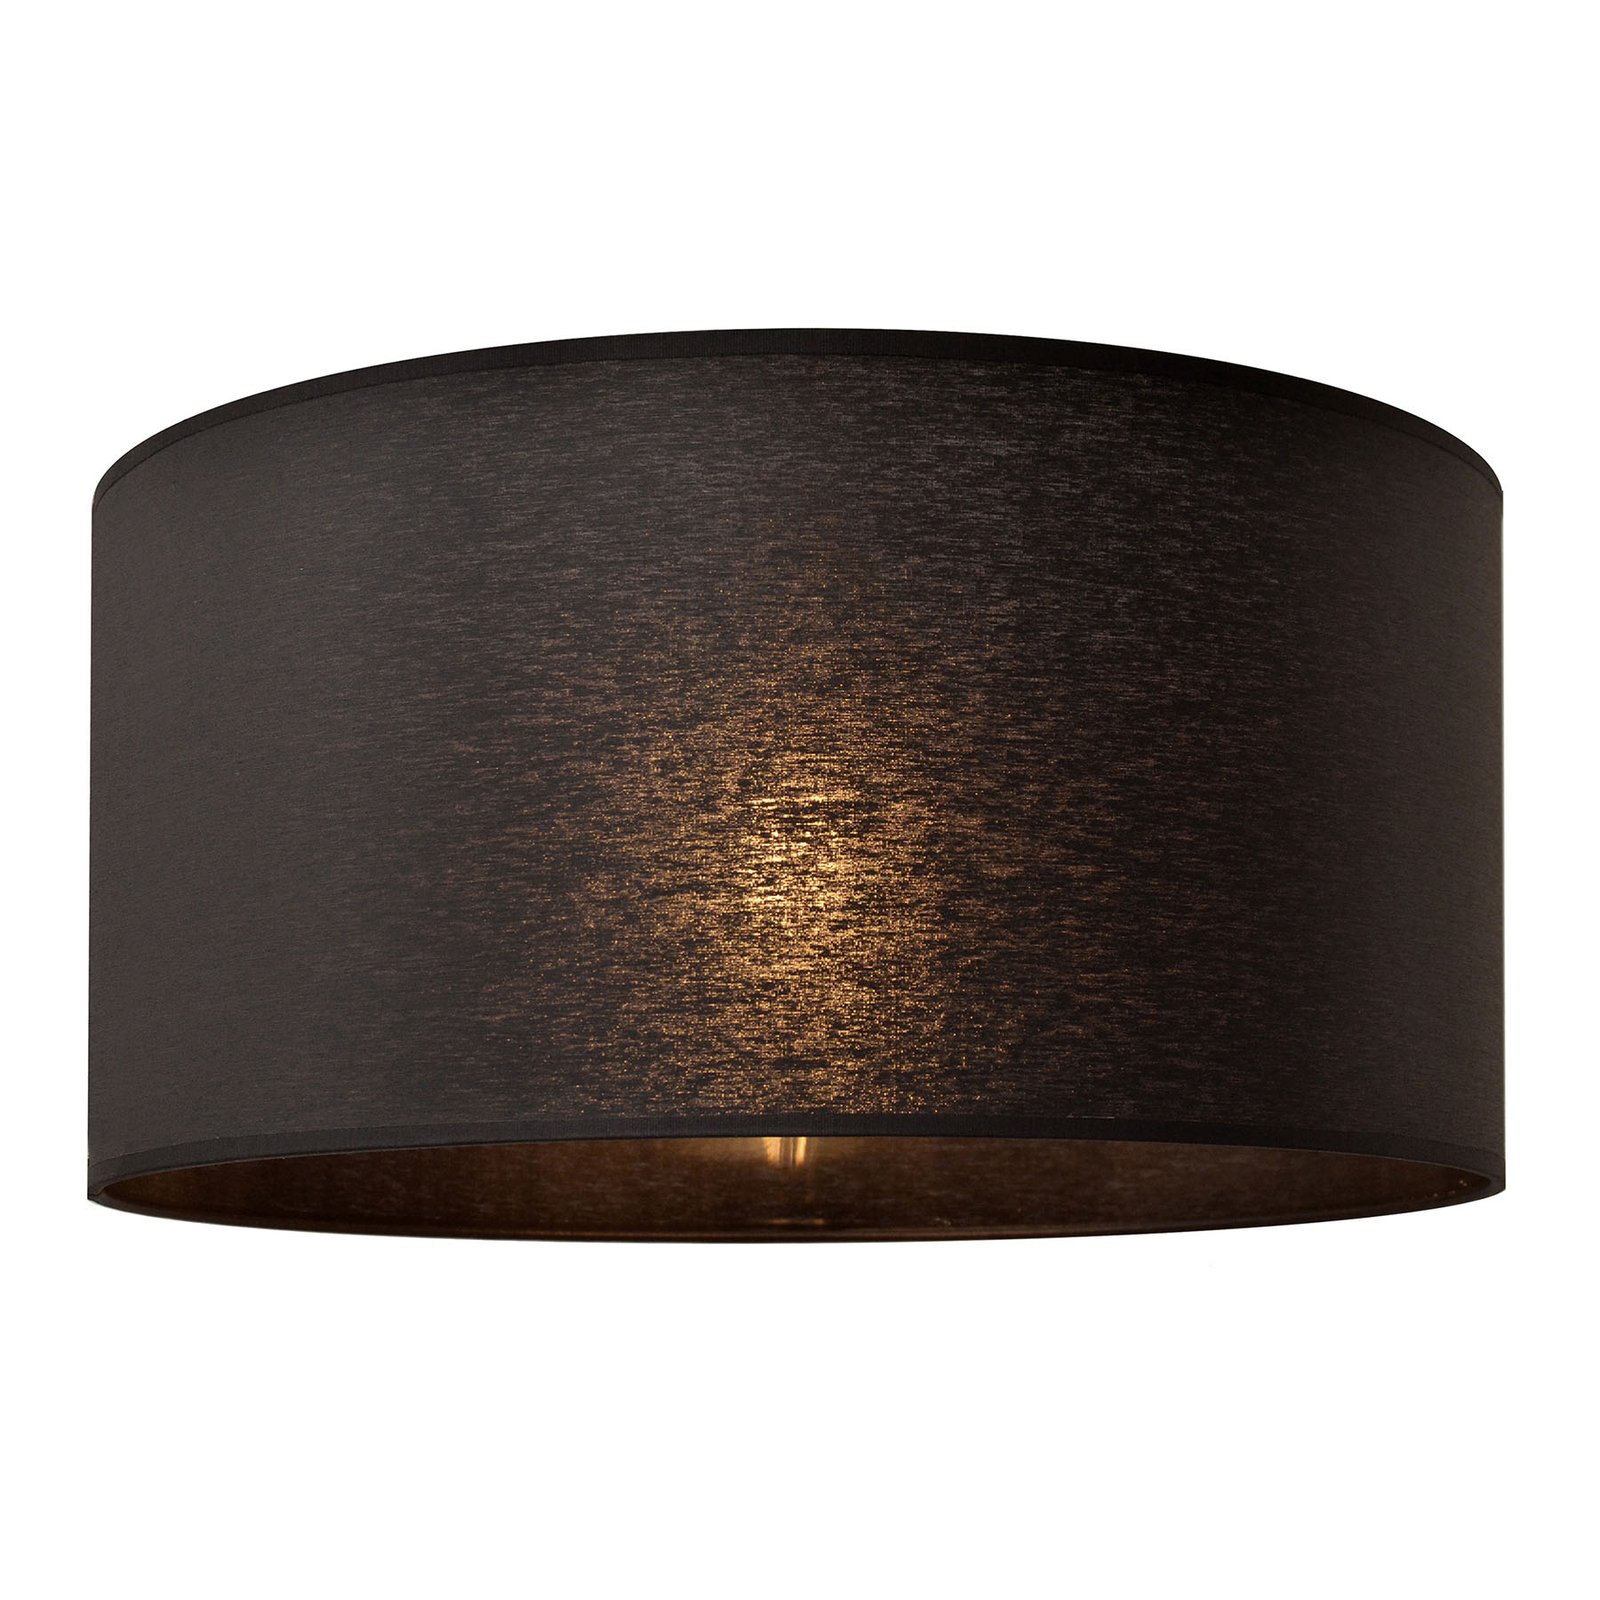 Alba lampshade, Ø 40 cm, E27, black